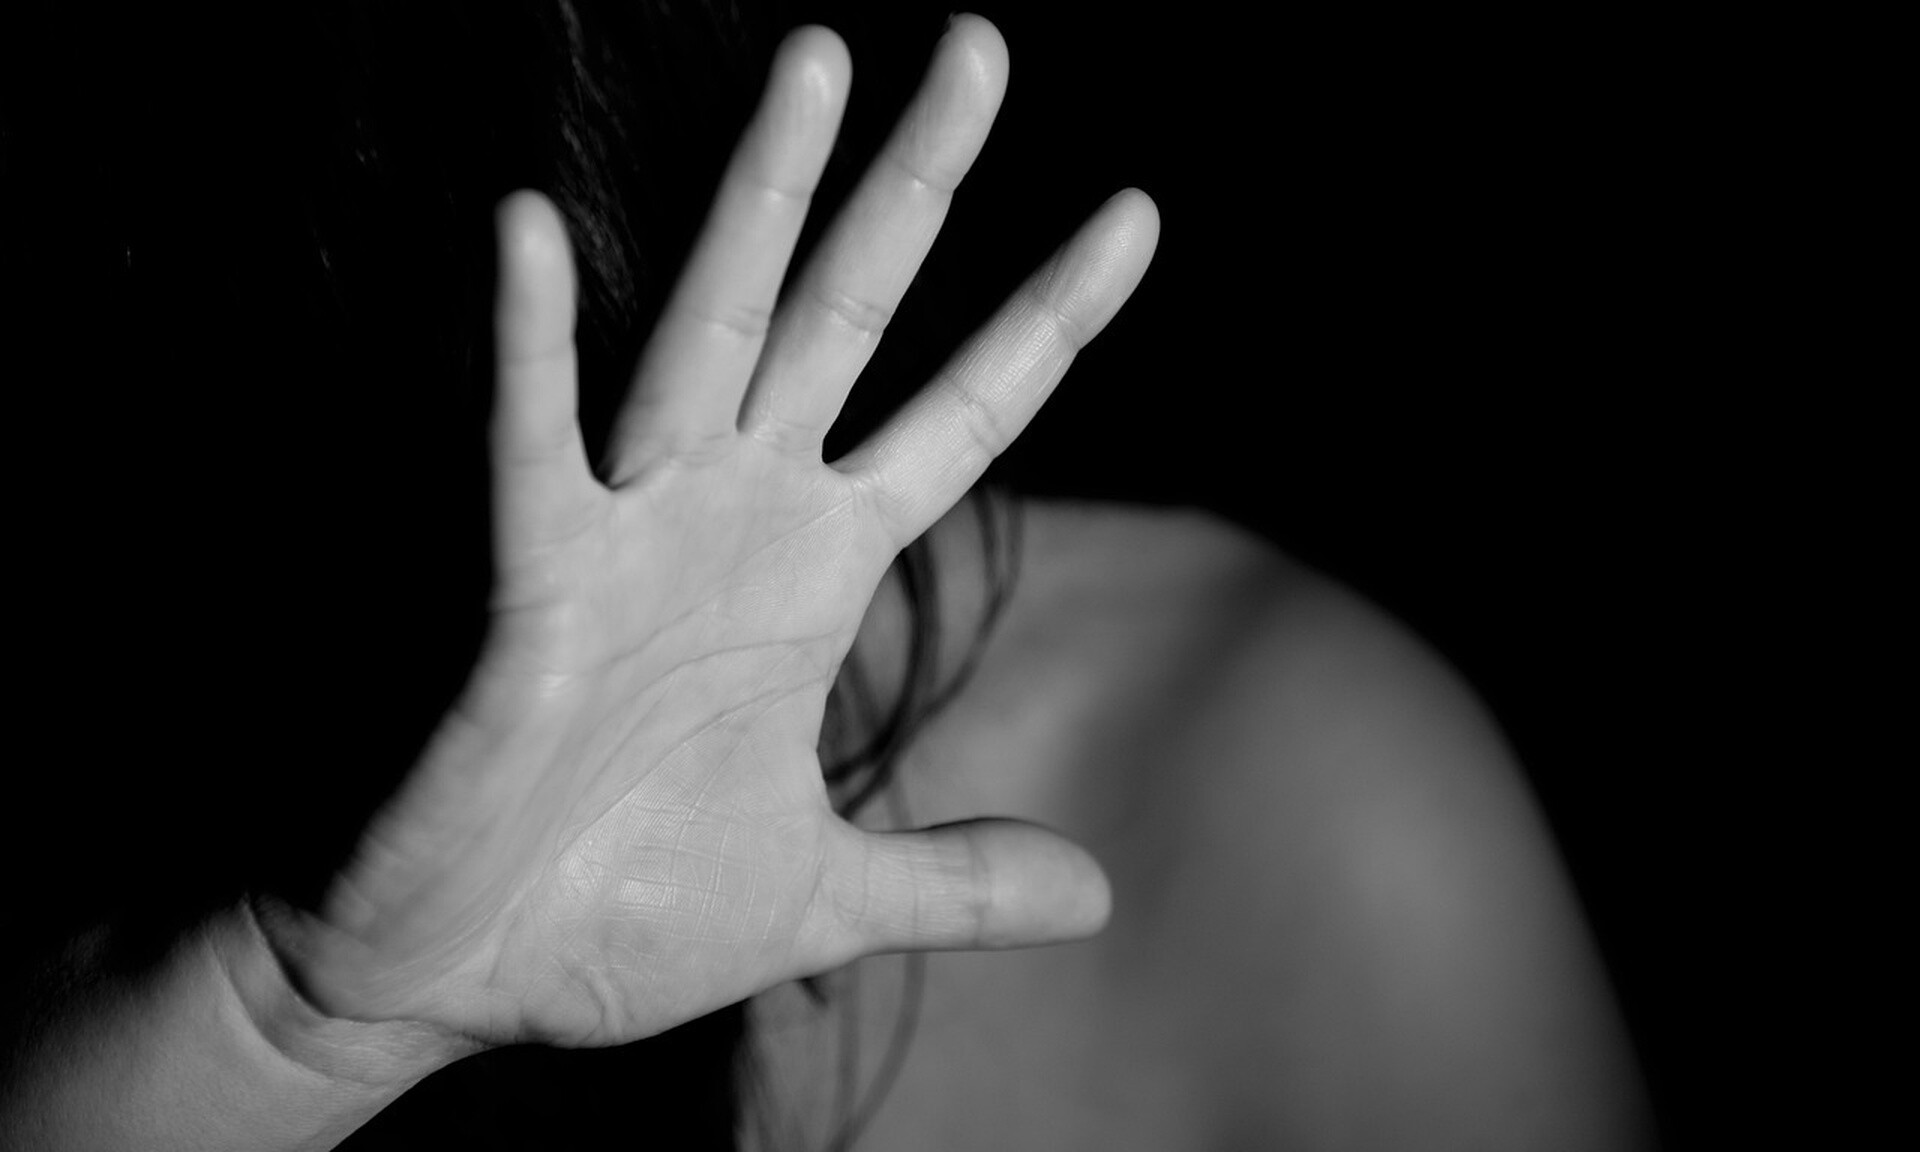 Περιστατικό ενδοοικογενειακής βίας στον Βόλο: «Θα σε βρω και θα σε σκοτώσω»